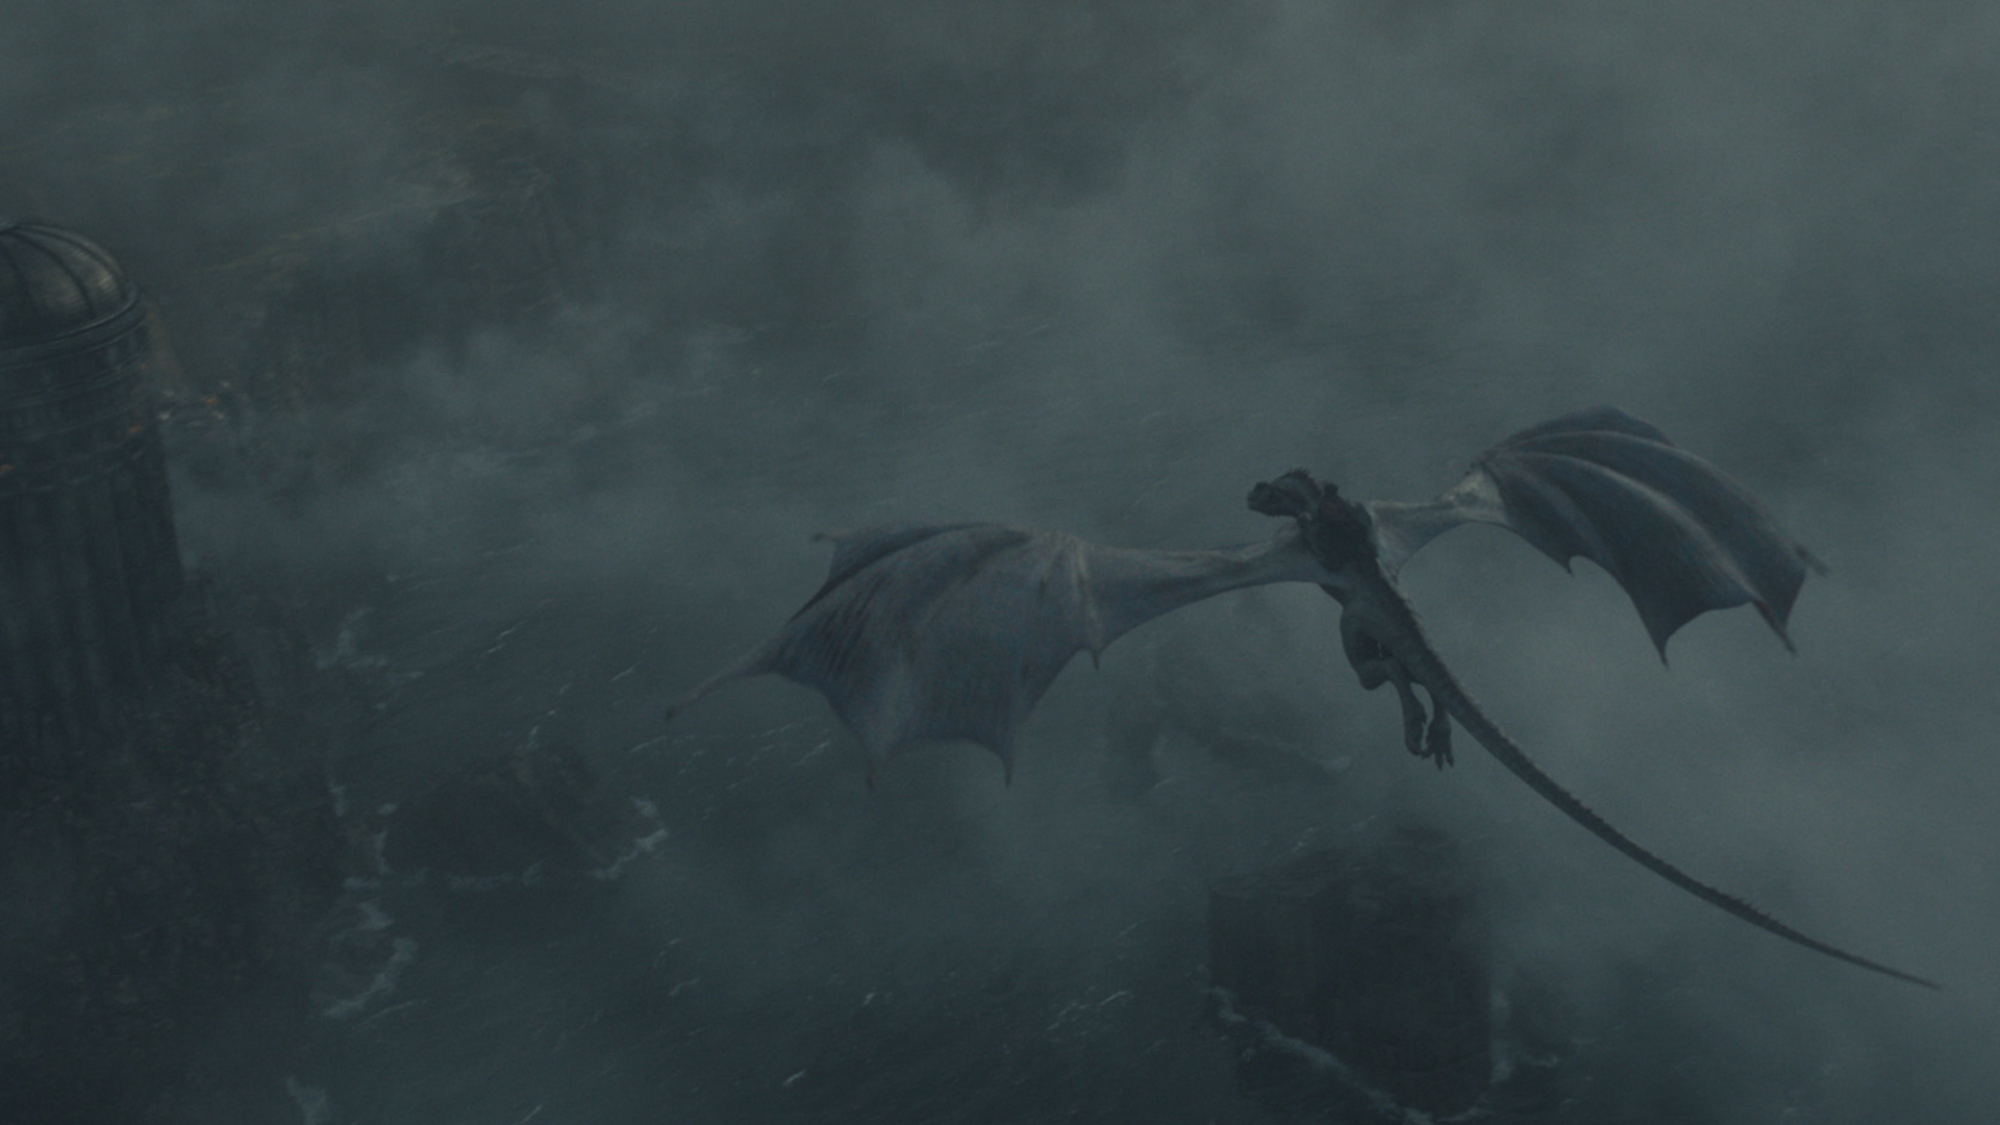 Un dragon vole dans un ciel nuageux au-dessus d'un palais dans "La Maison du Dragon".